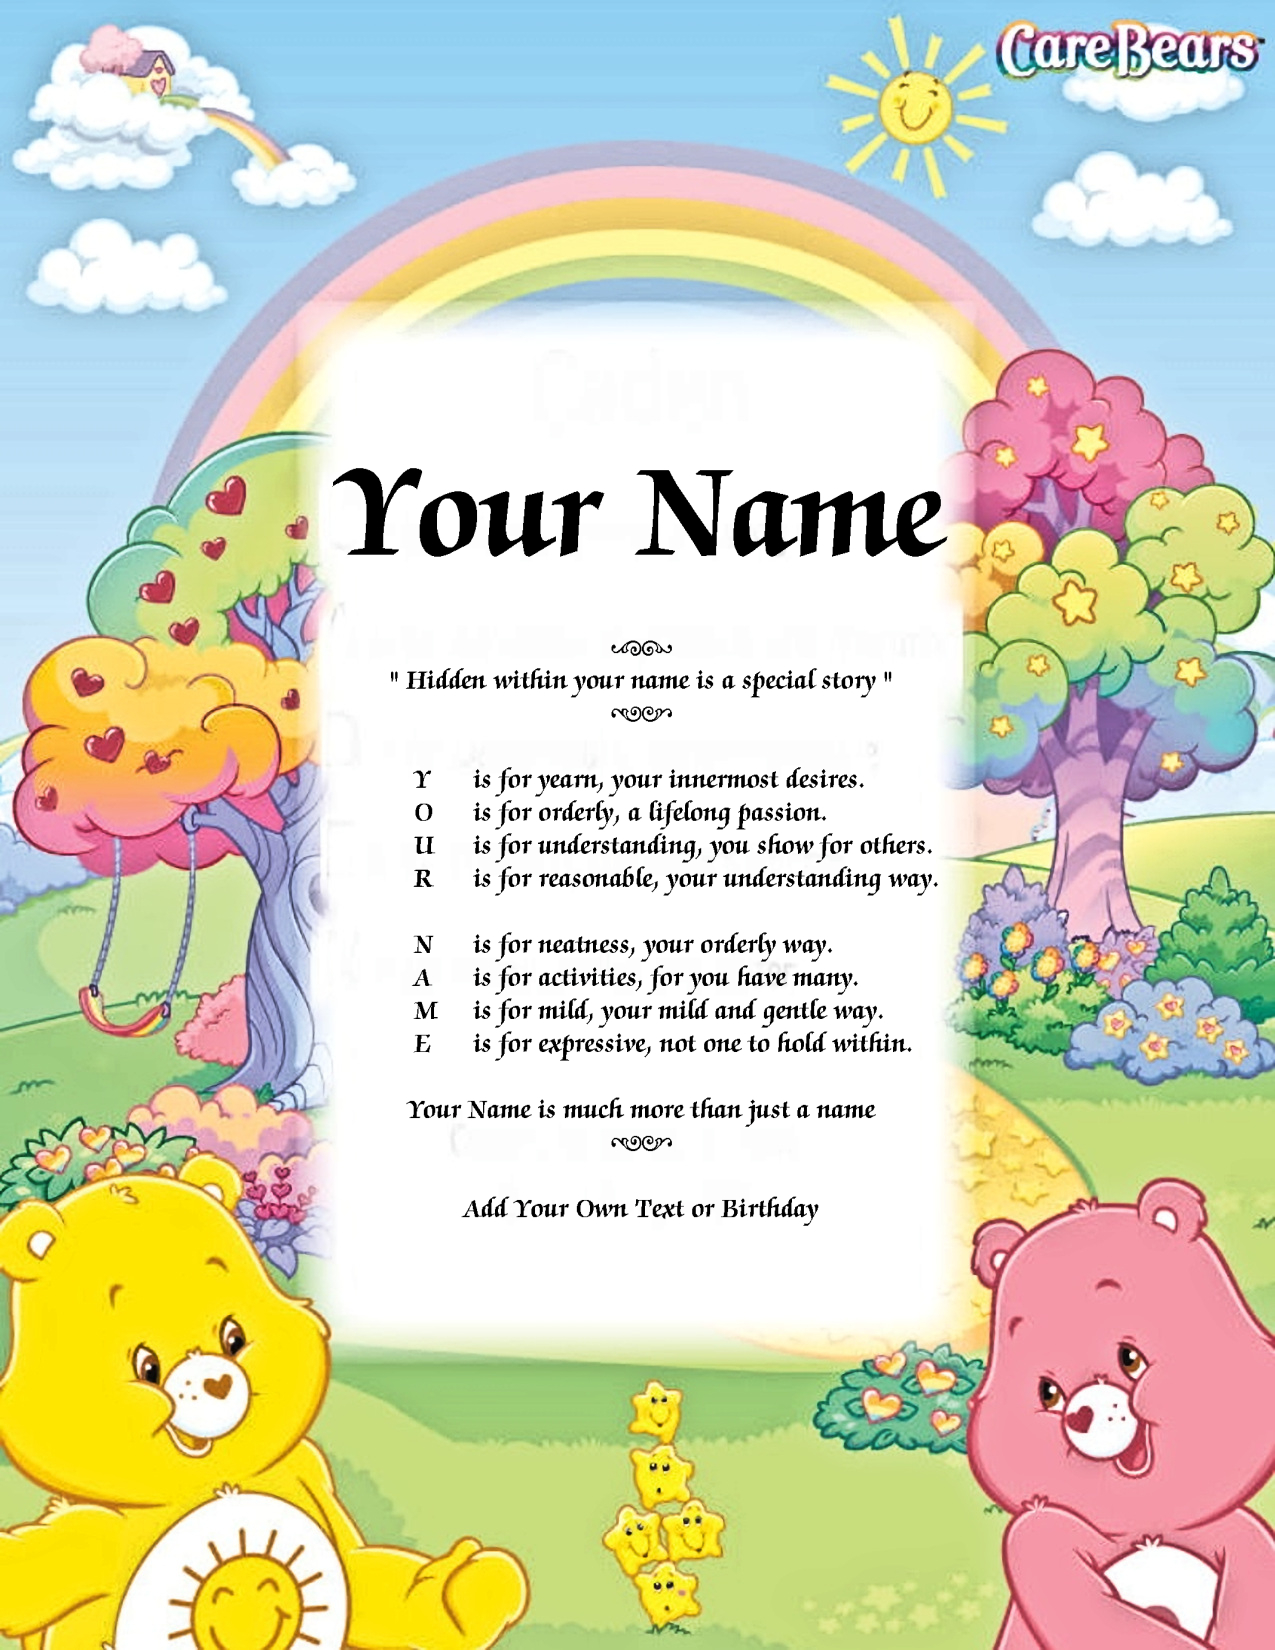 Care Bears Playground Name Poem Story PDF Version